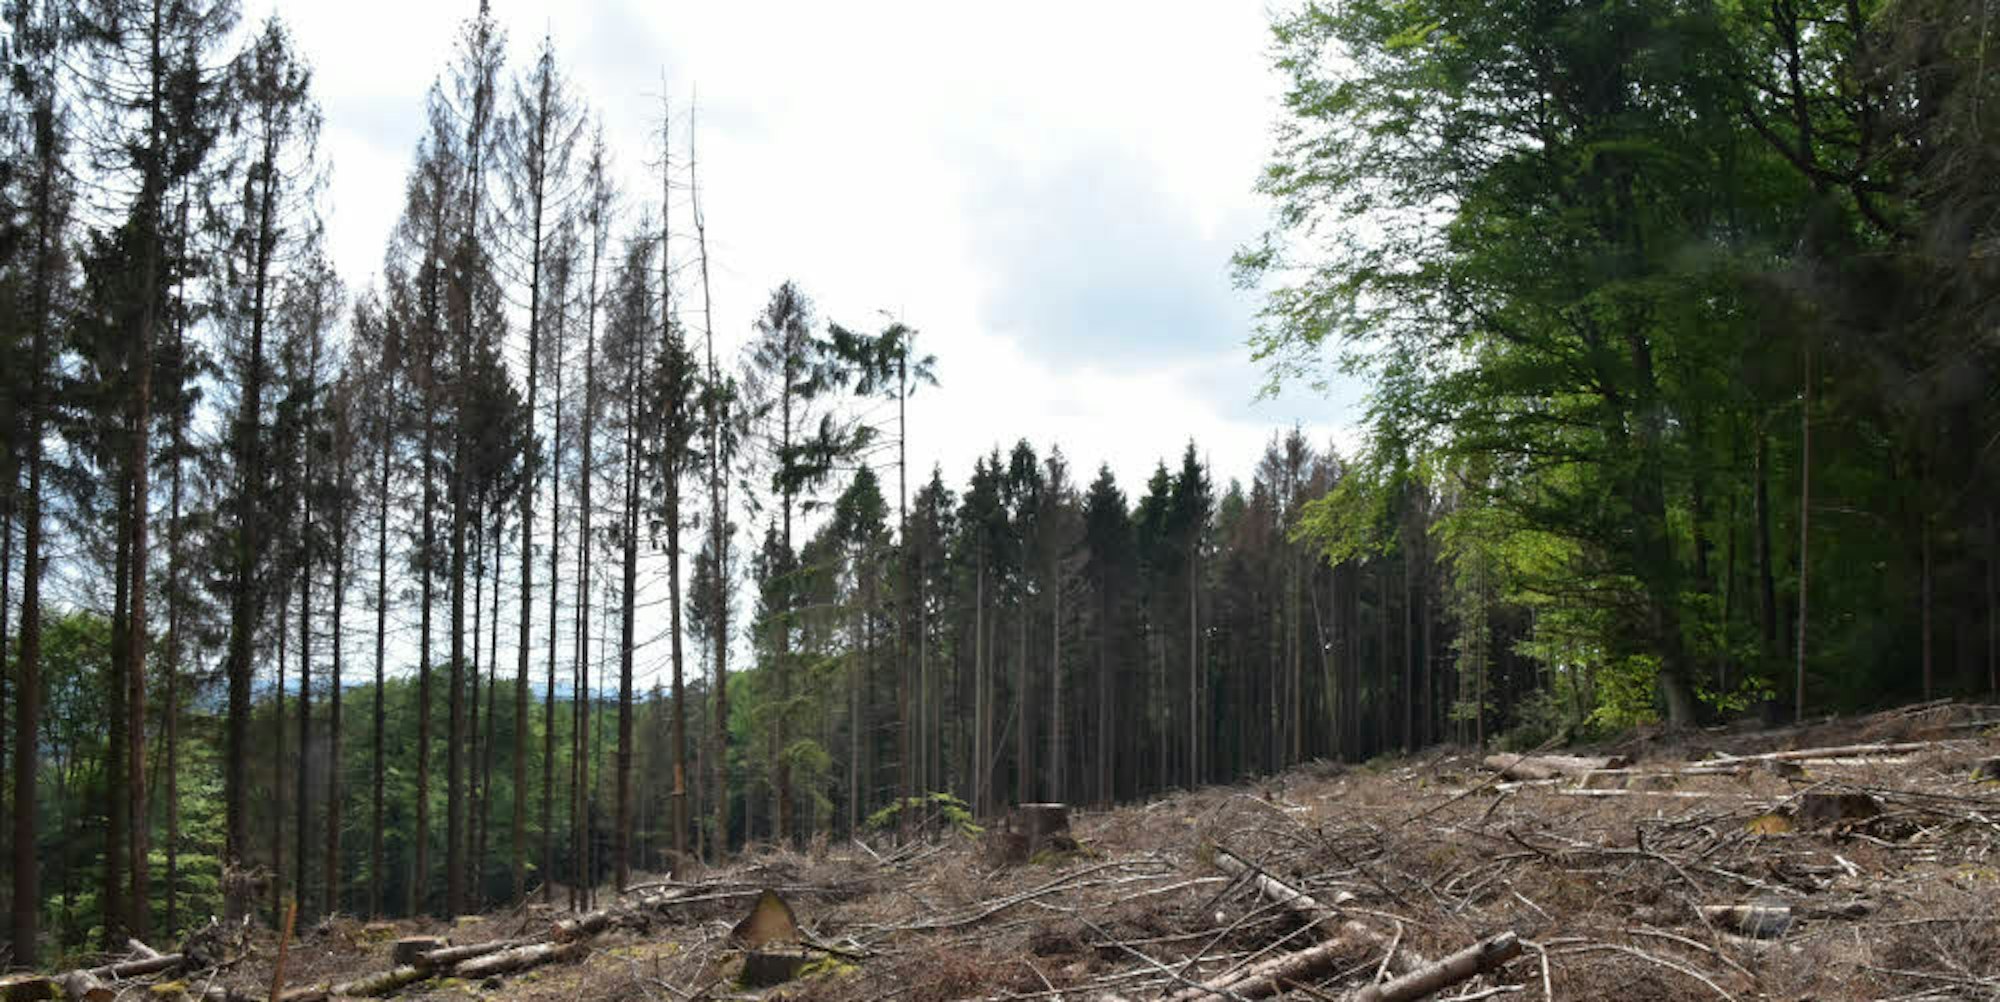 Die Folgen des Klimawandels sind auch in der Region spürbar. Die Konsequenz: Viele Bäume sterben ab.